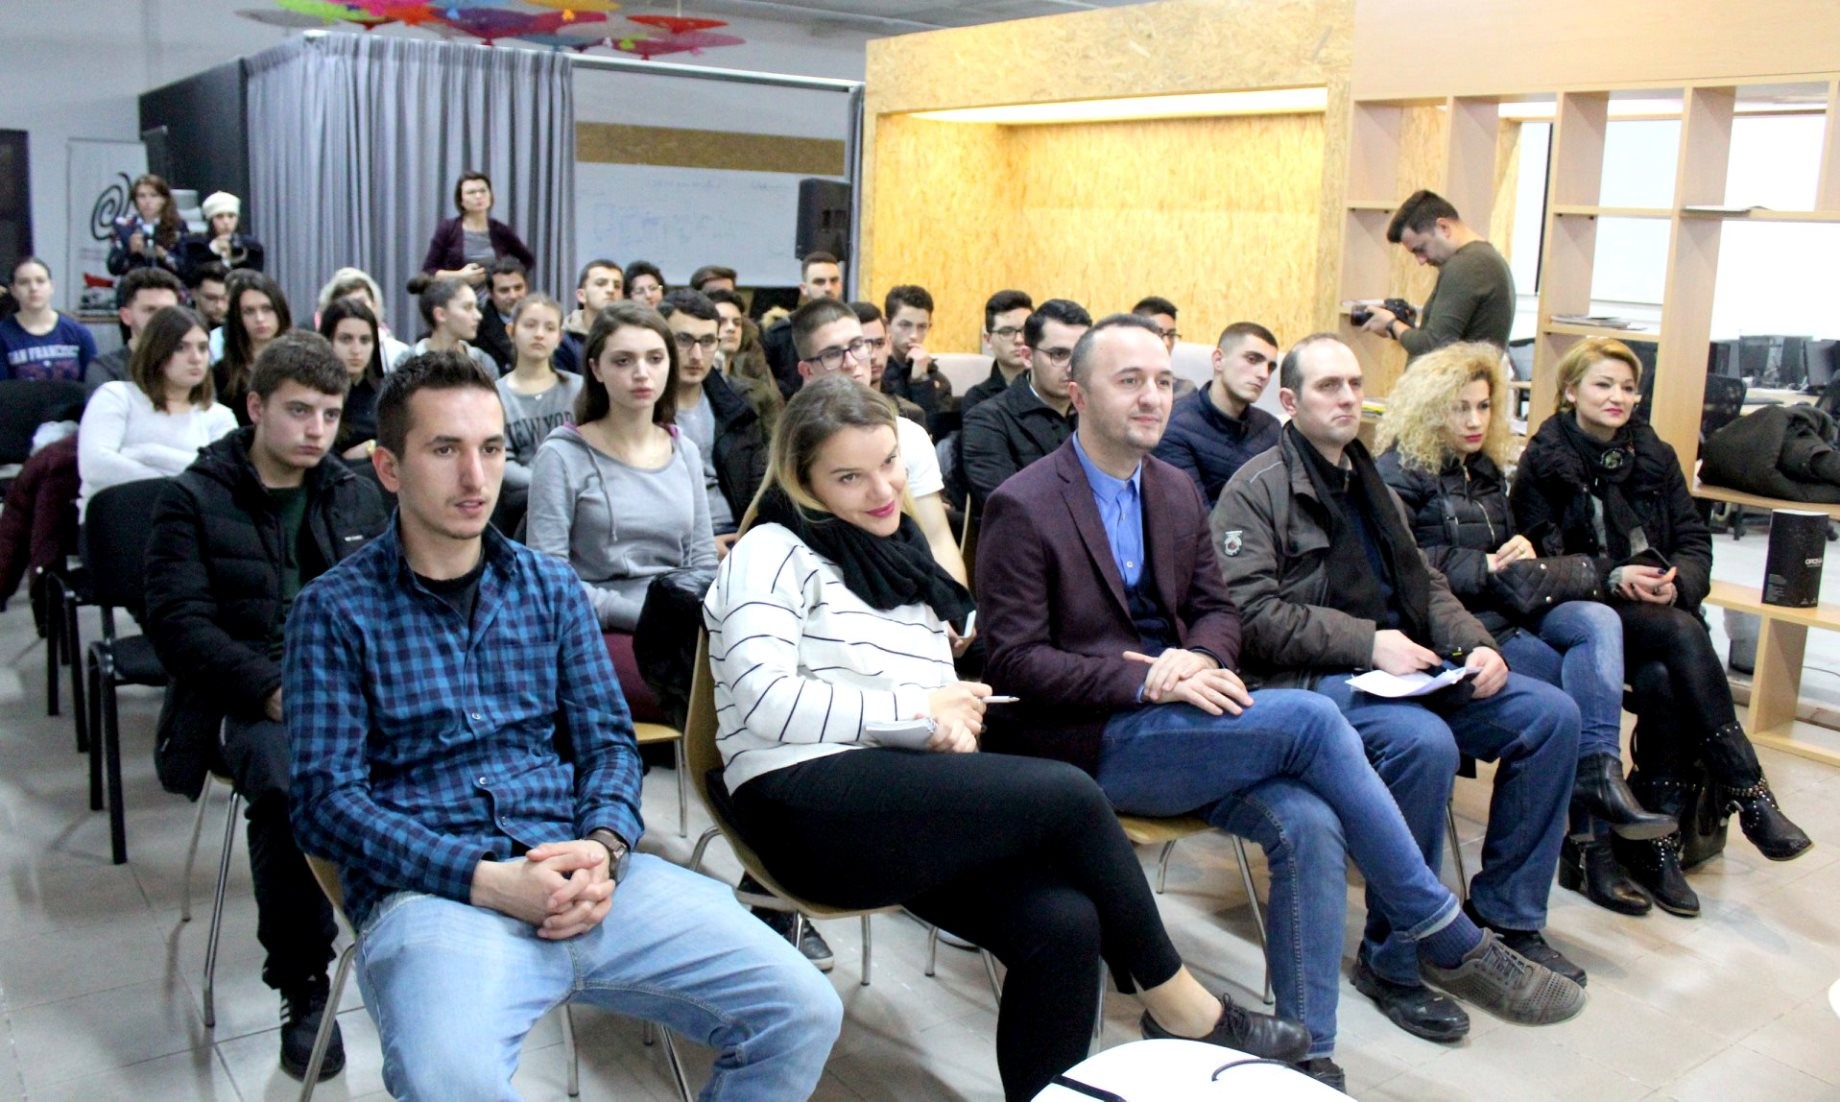 ICT Awards nis takime në Tiranë, Prishtinë dhe Shkodër